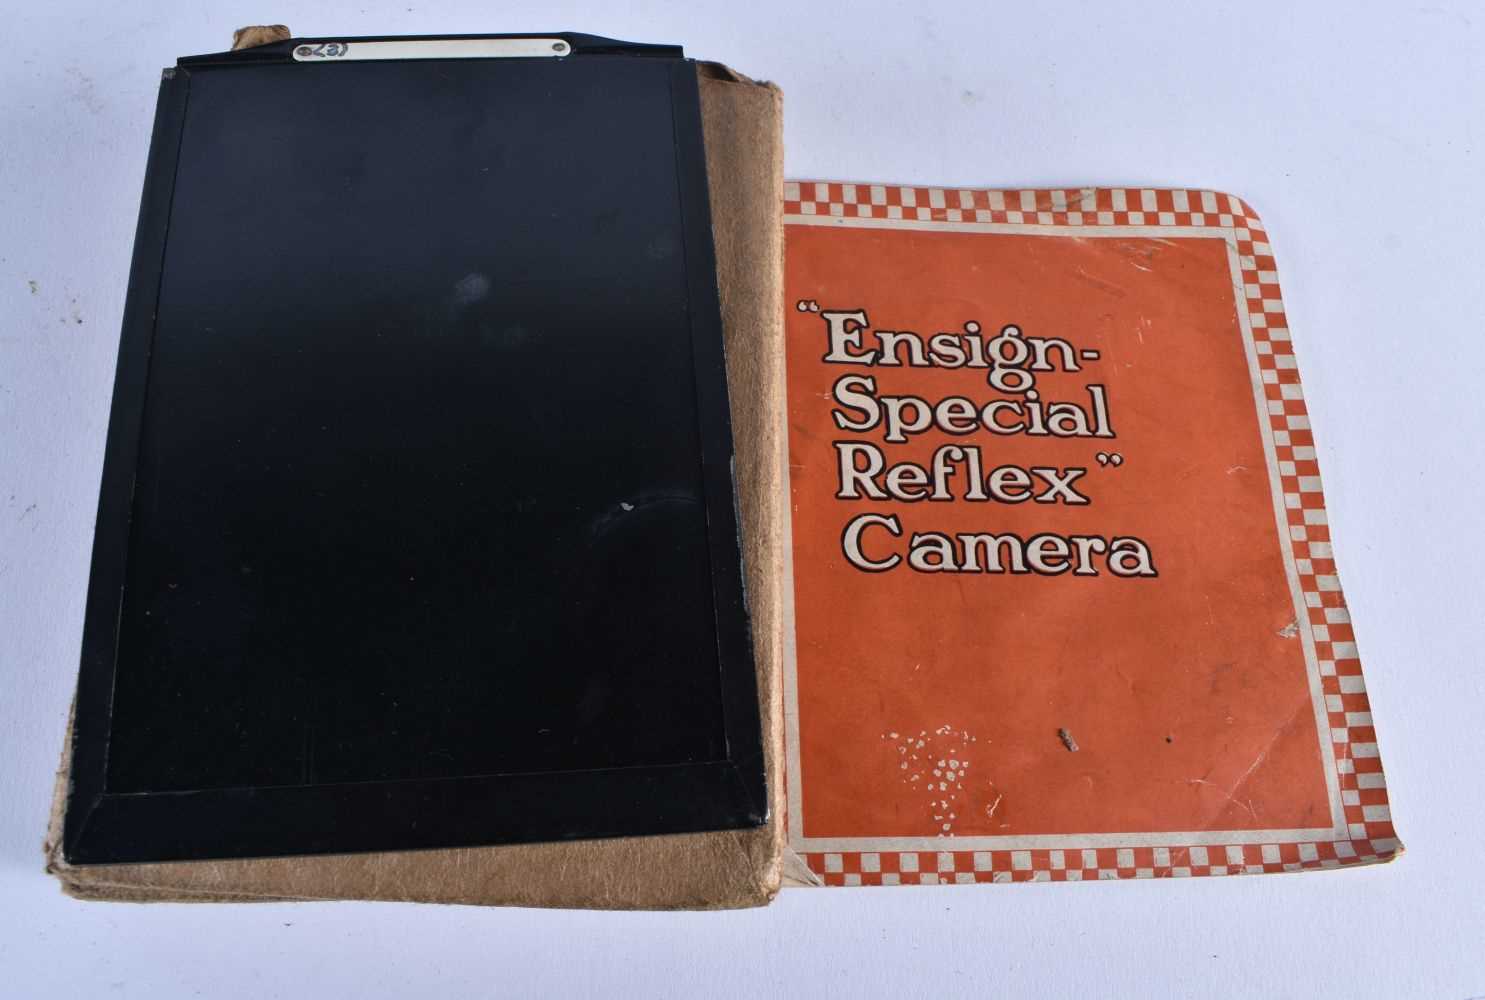 Ensign-Special Reflex Box ANTIQUE CAMERA w/ Original Box & Slides. 26 cm x 24 cm. - Image 2 of 5